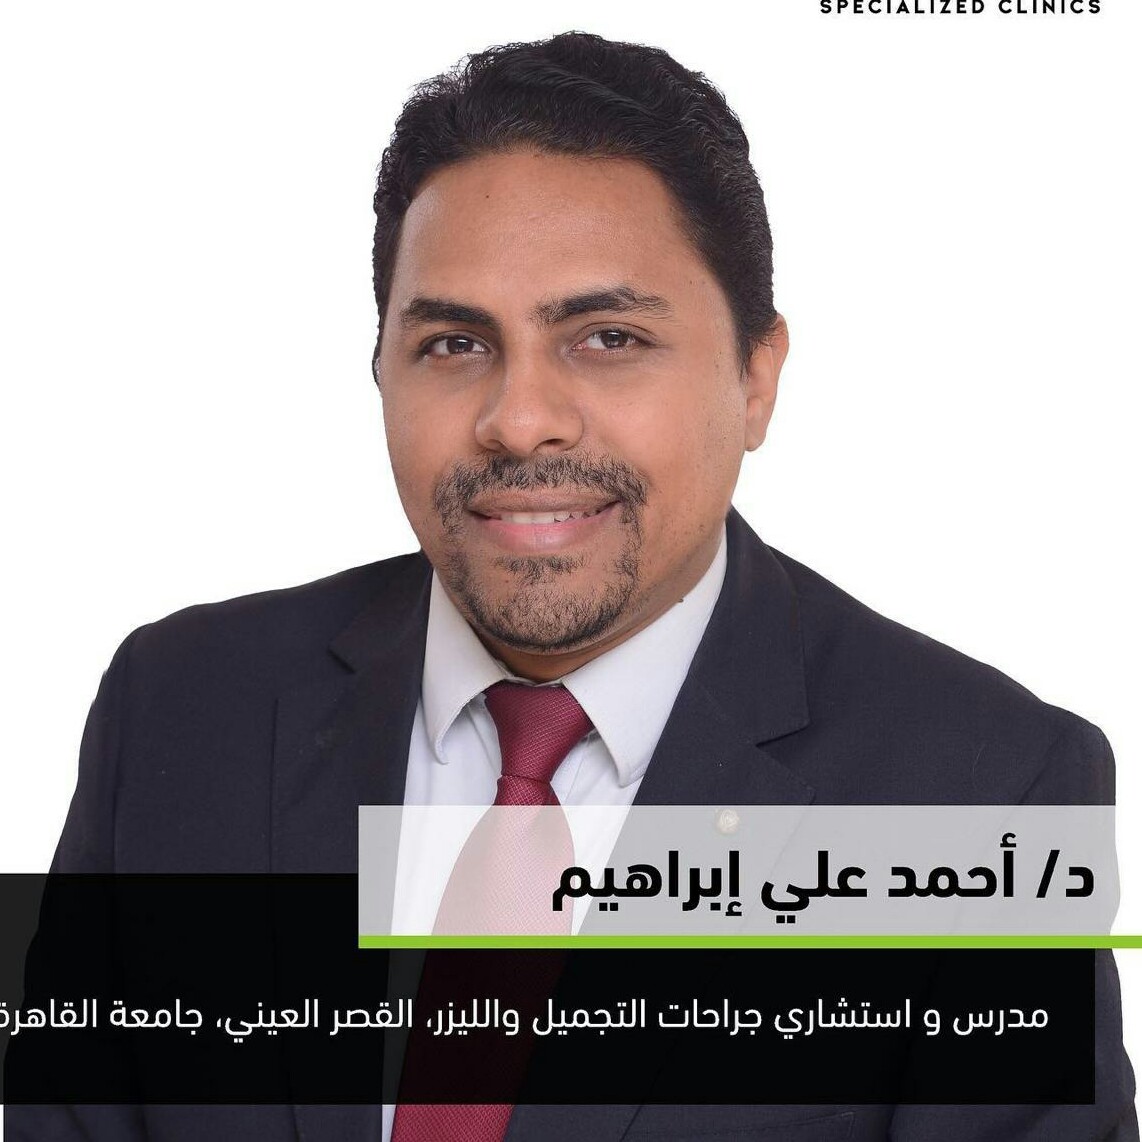 Dr. Ahmed Ali Ebrahiem